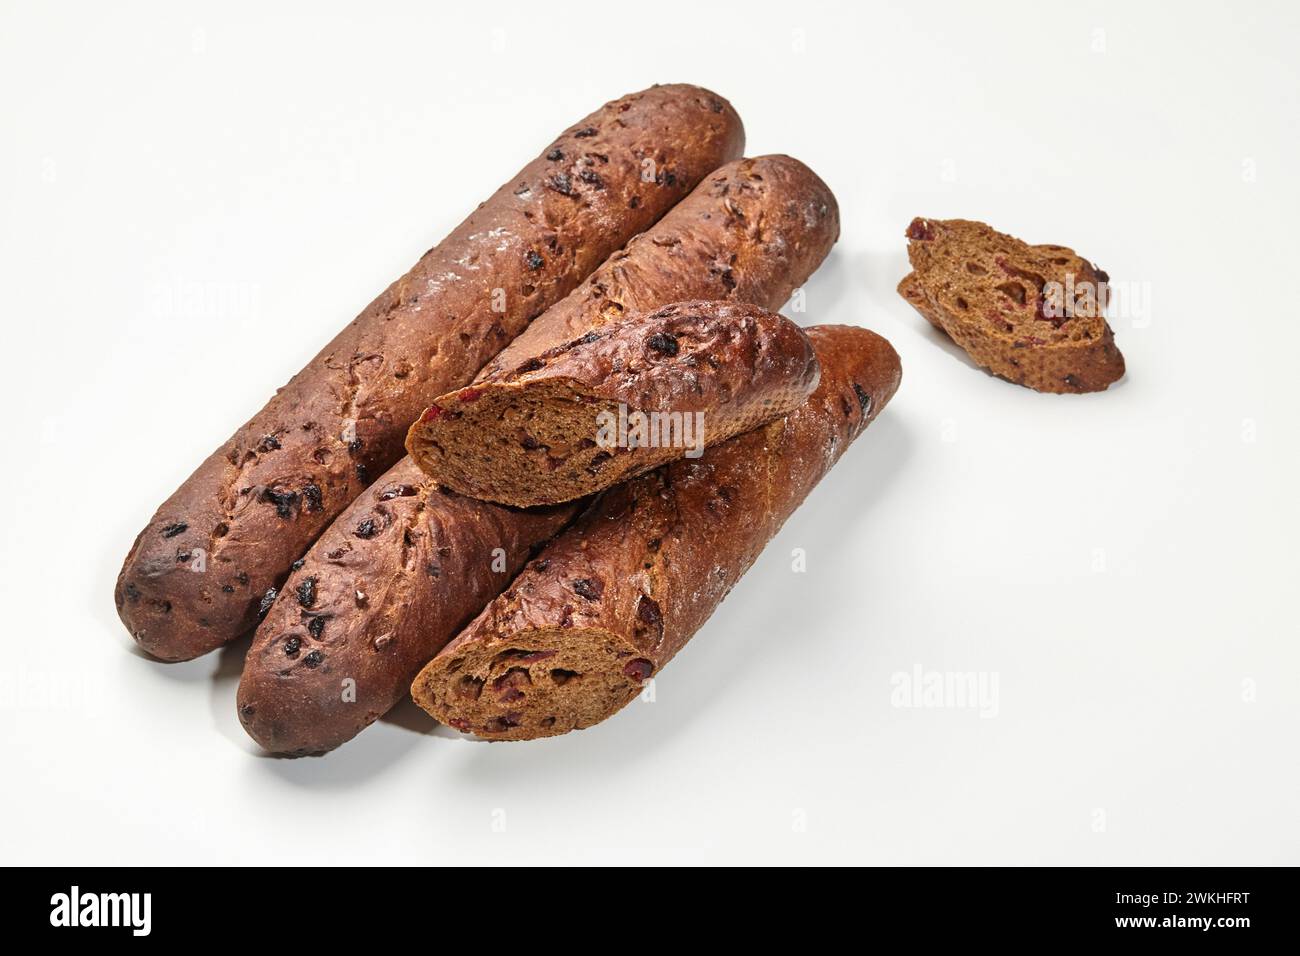 Dunkle Roggen-Baguette-Brote mit säuerlichen Preiselbeeren, in detaillierter Nahaufnahme auf weißem Hintergrund. Konzept für handwerkliche Backwaren Stockfoto